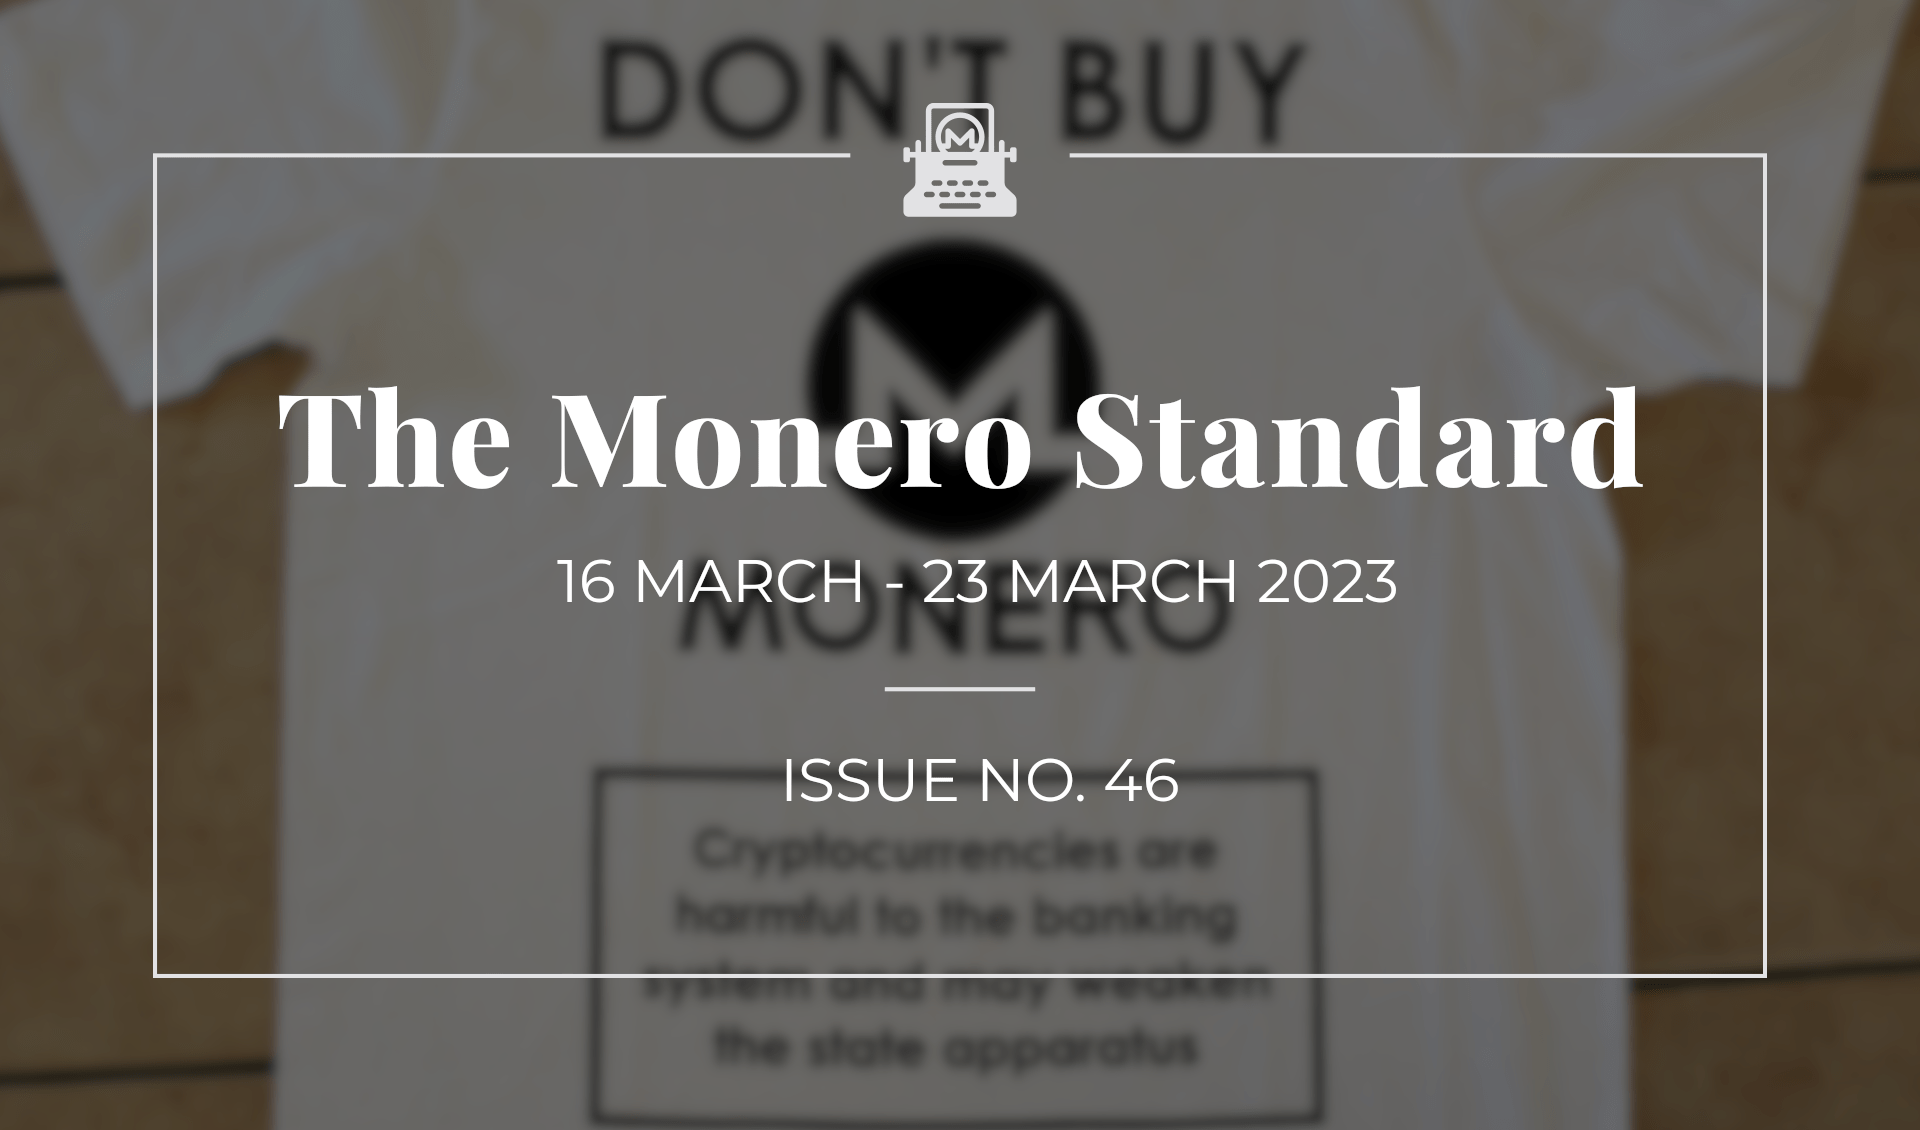 The Monero Standard #46: 16 March 2023 - 23 March 2023